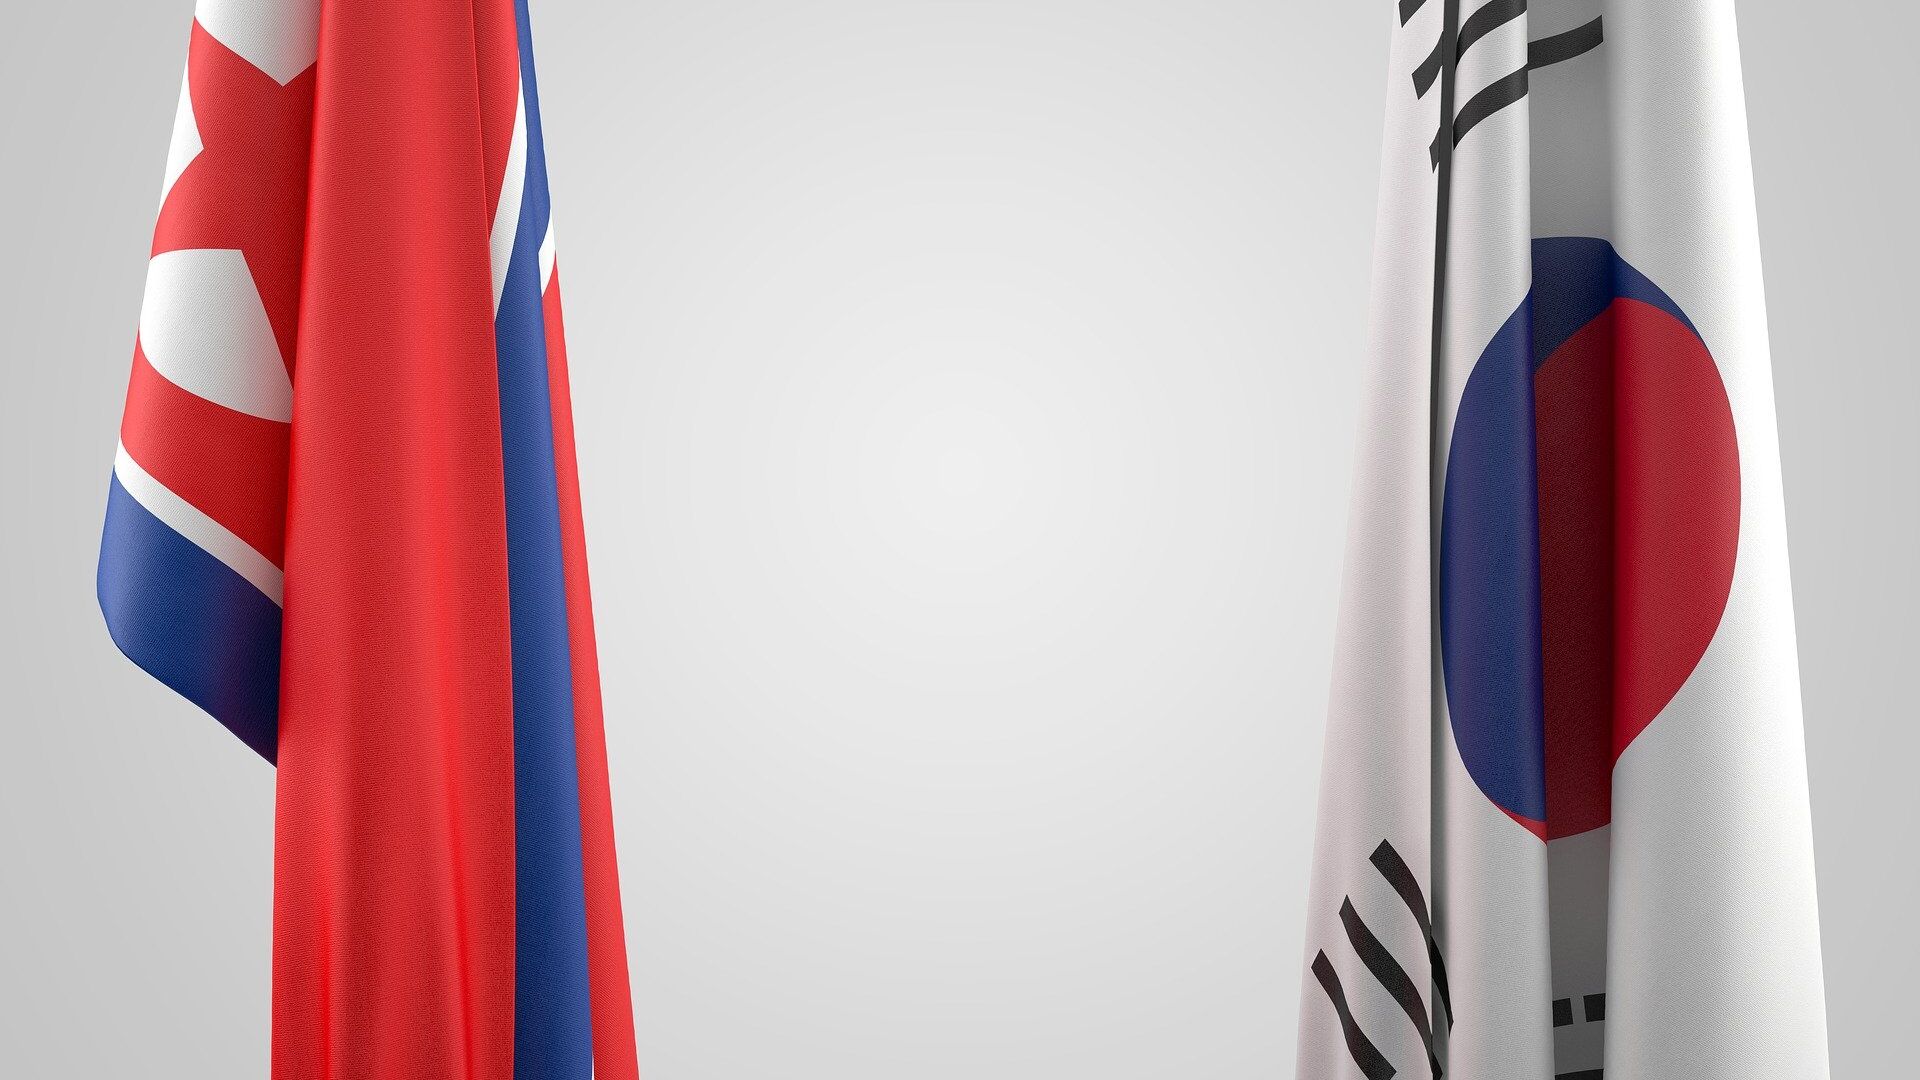 Las banderas de Corea del Norte y Corea del Sur - Sputnik Mundo, 1920, 10.08.2021